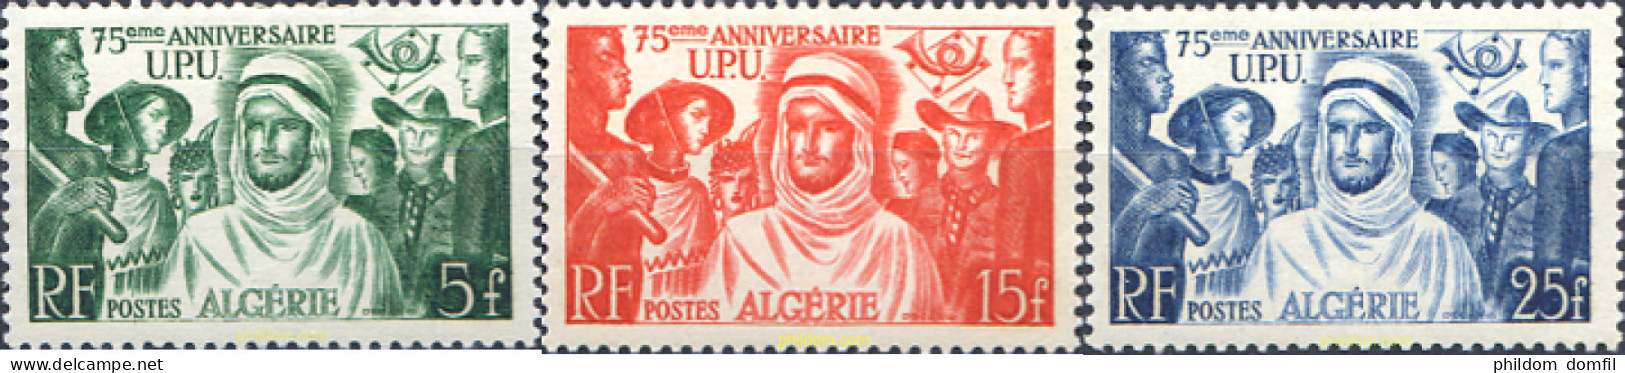 343182 HINGED ARGELIA 1949 75 ANIVERSARIO DE LA UNION POSTAL UNIVERSAL - Algerije (1962-...)